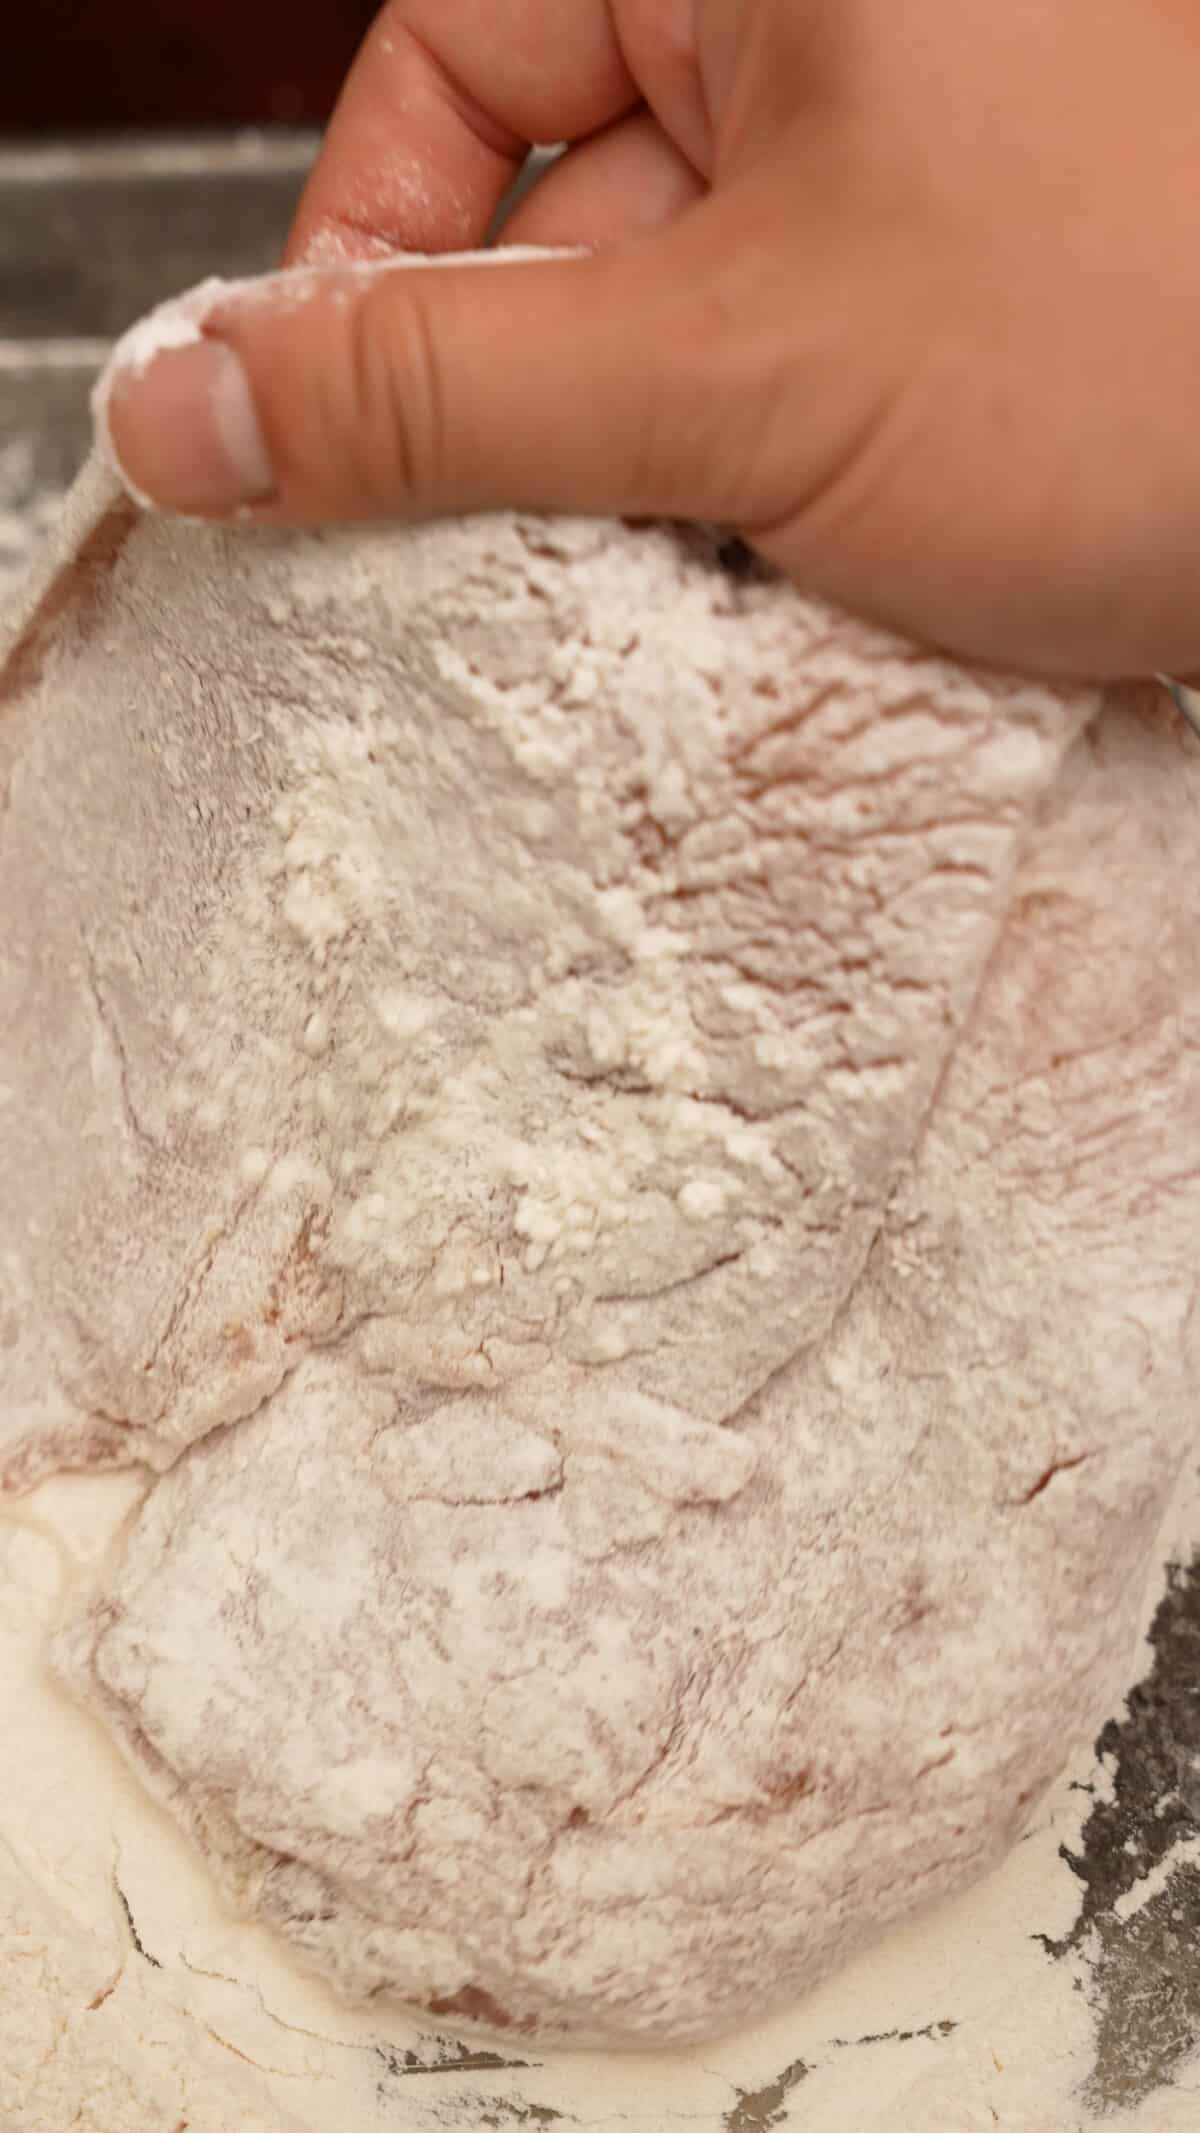 Dredging a chicken cutlet in flour.